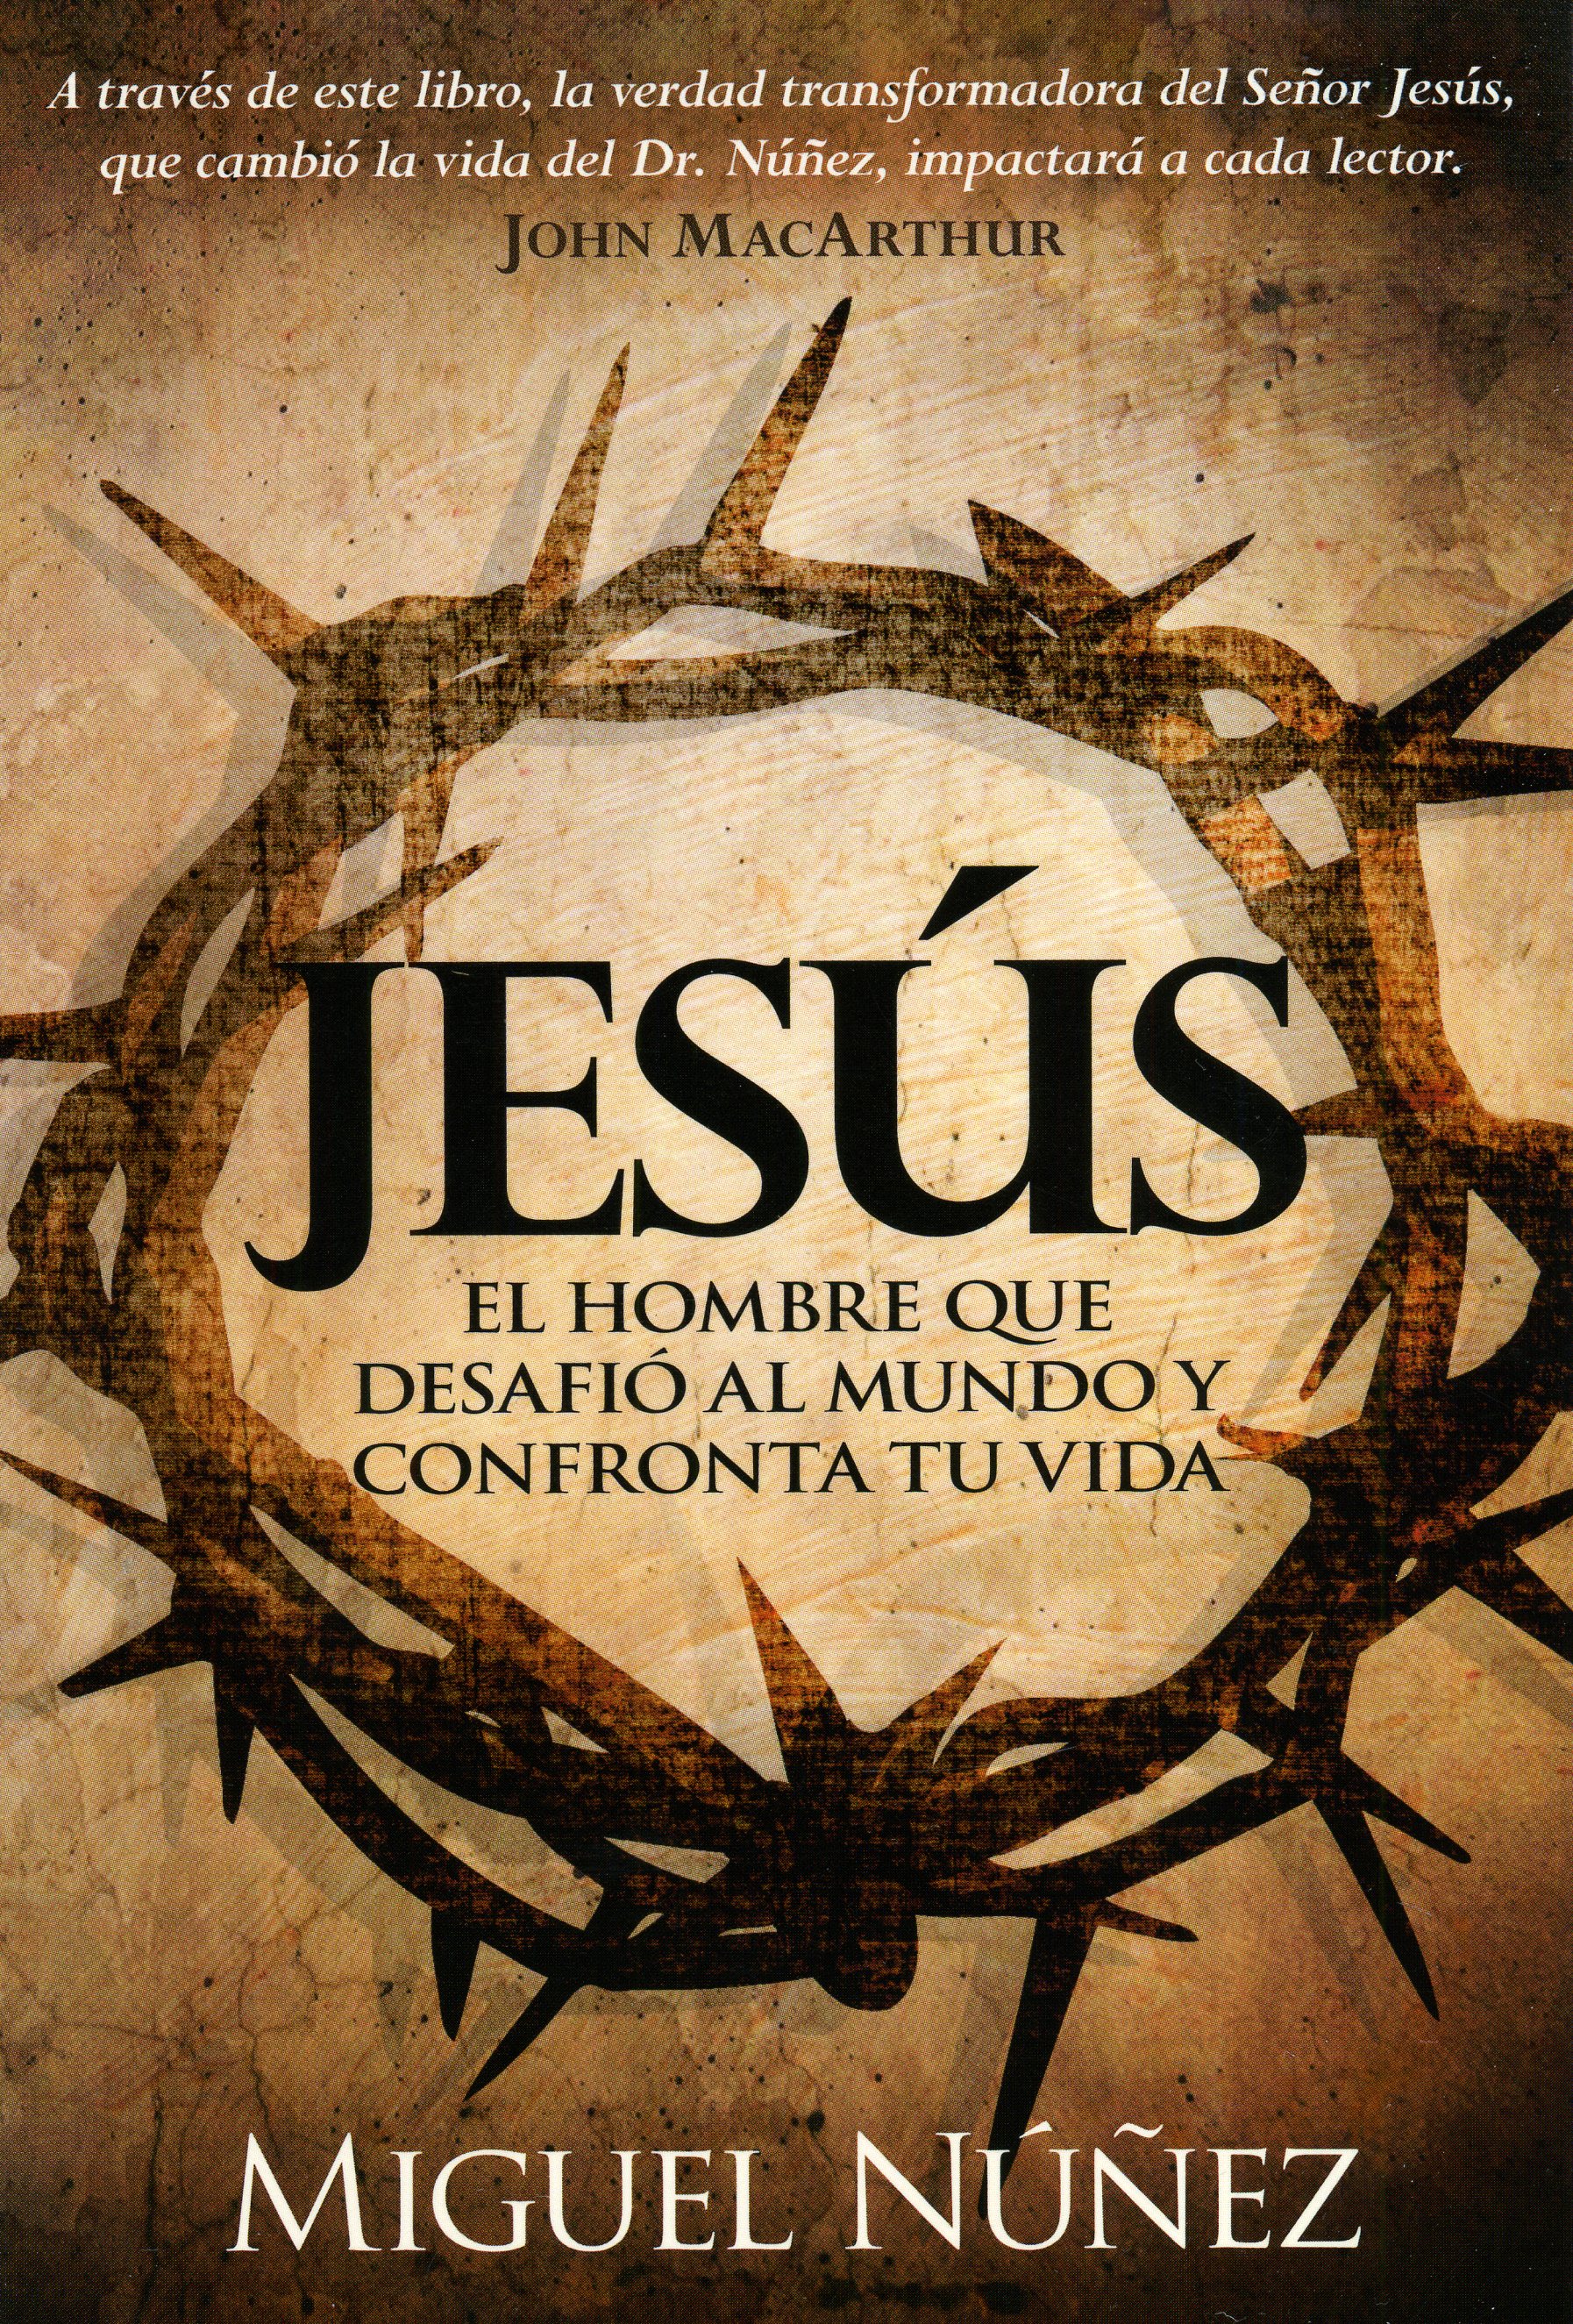 Jesús el hombre que desafió al mundo y confronta tu vida